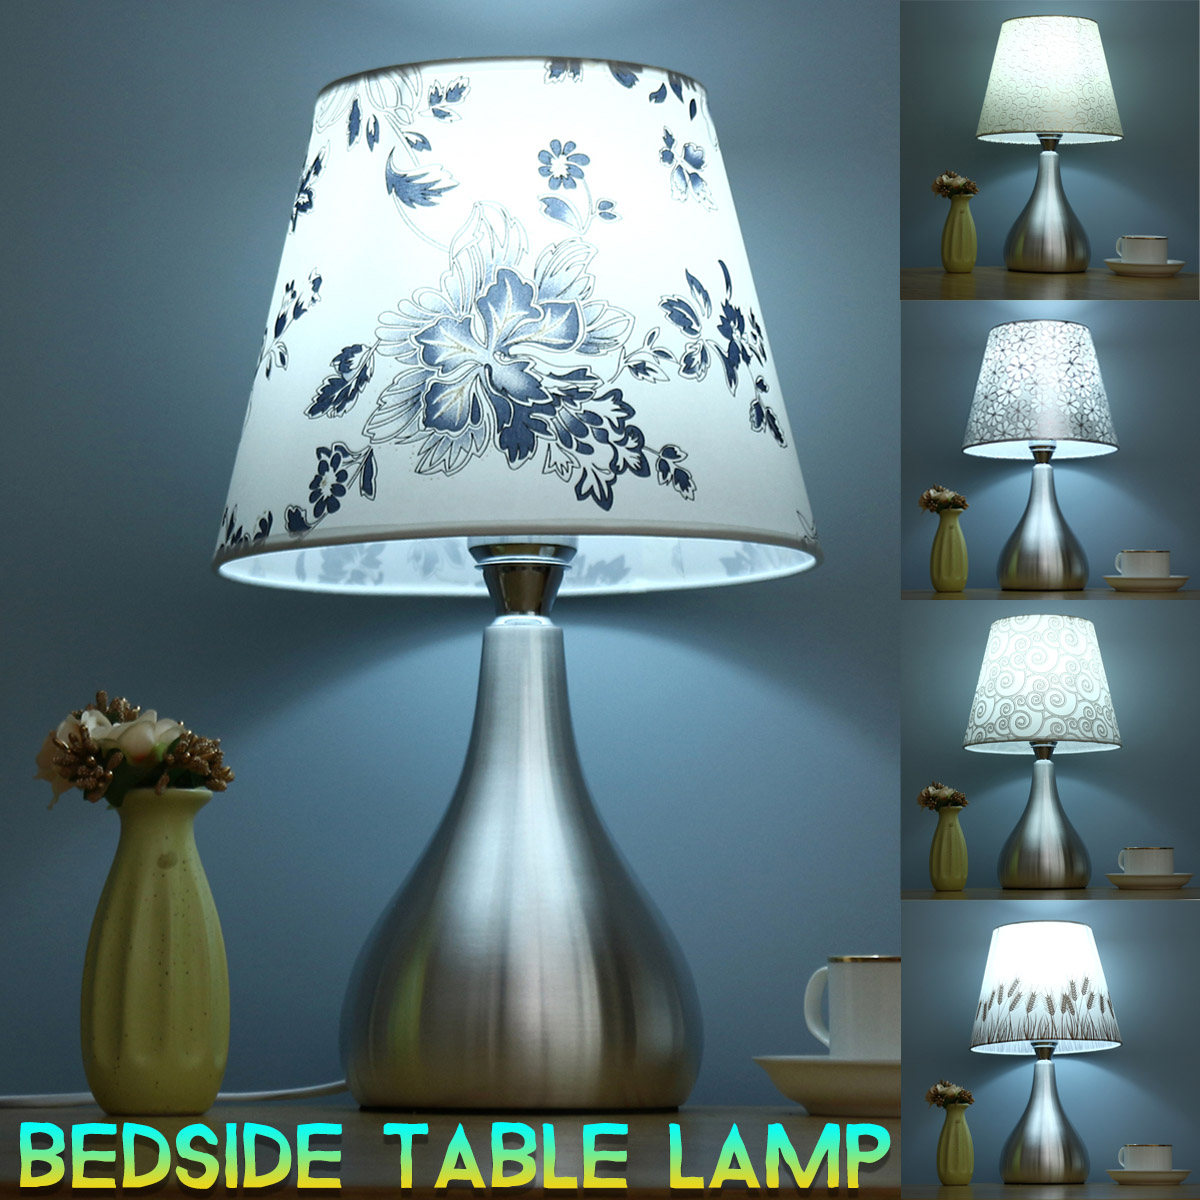 American-Creative-Iron-Art-Bedside-Desk-Lamp-for-Bedroom-Dresser-Living-Room-Kids-Room-College-Dorm-1841347-1